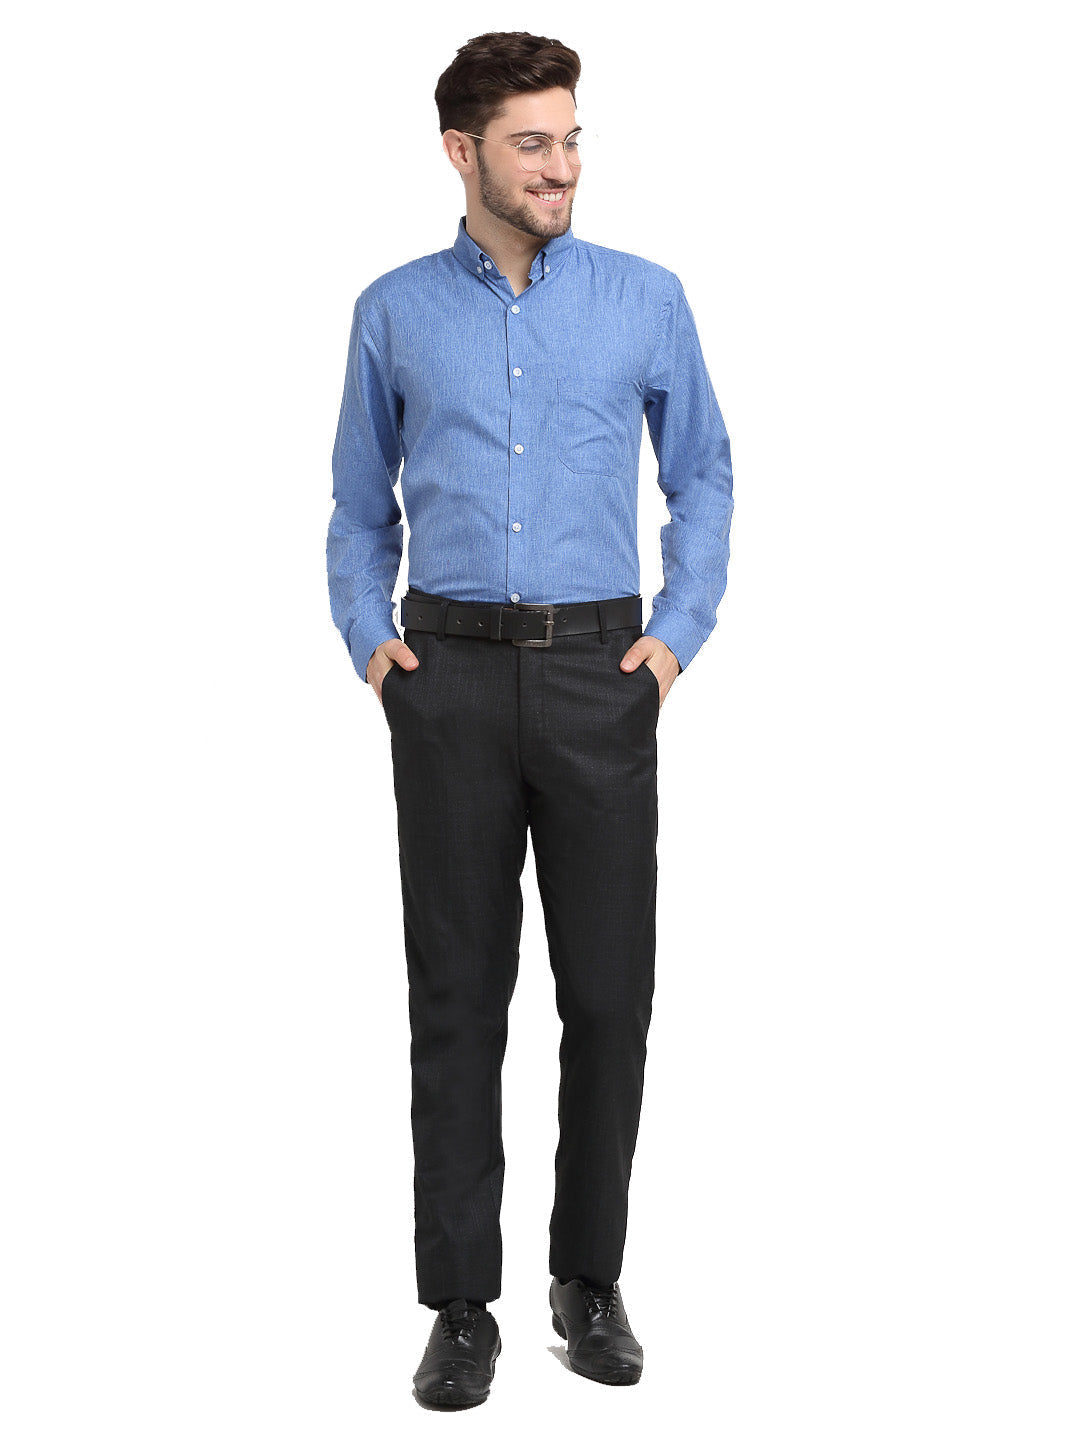 Men's Blue Button Down Collar Cotton Formal Shirt ( SF 785Light-Blue ) - Jainish